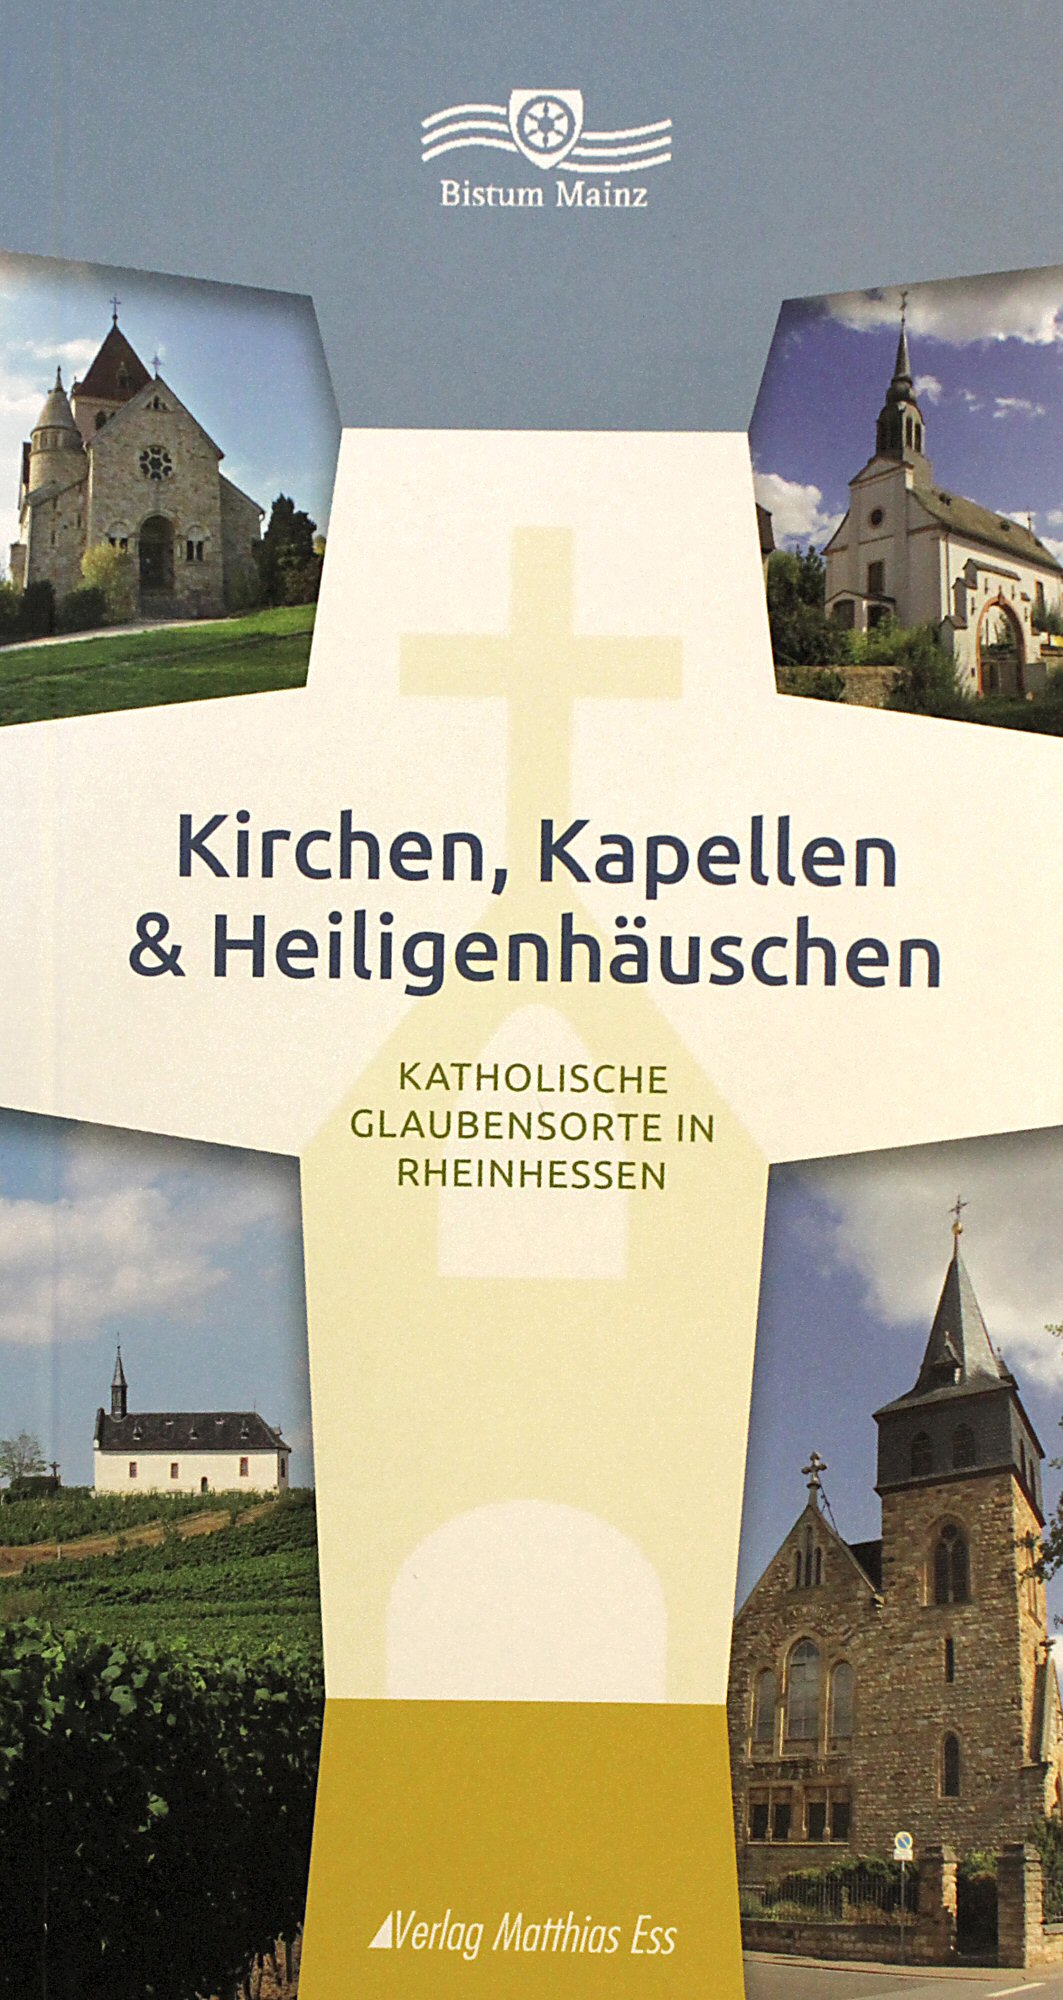 Kirchen Rheinhessen (c) Bistum Mainz / Matschak